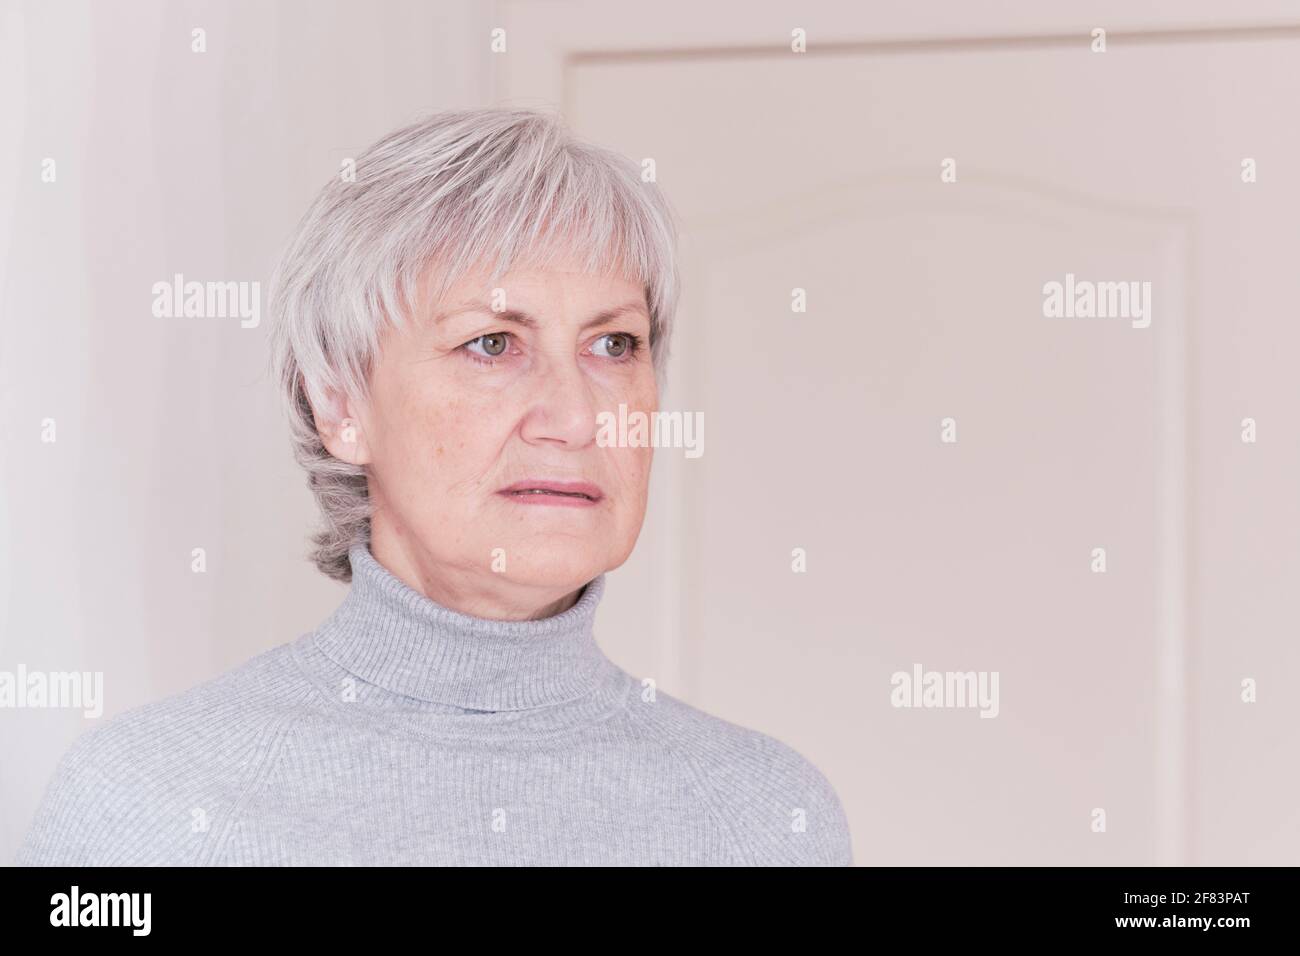 Ein Nahaufnahme-Porträt einer besorgt über etwas ältere kaukasische Frau mit kurzen grauen Haaren in einem grauen Rollkragen. Stockfoto